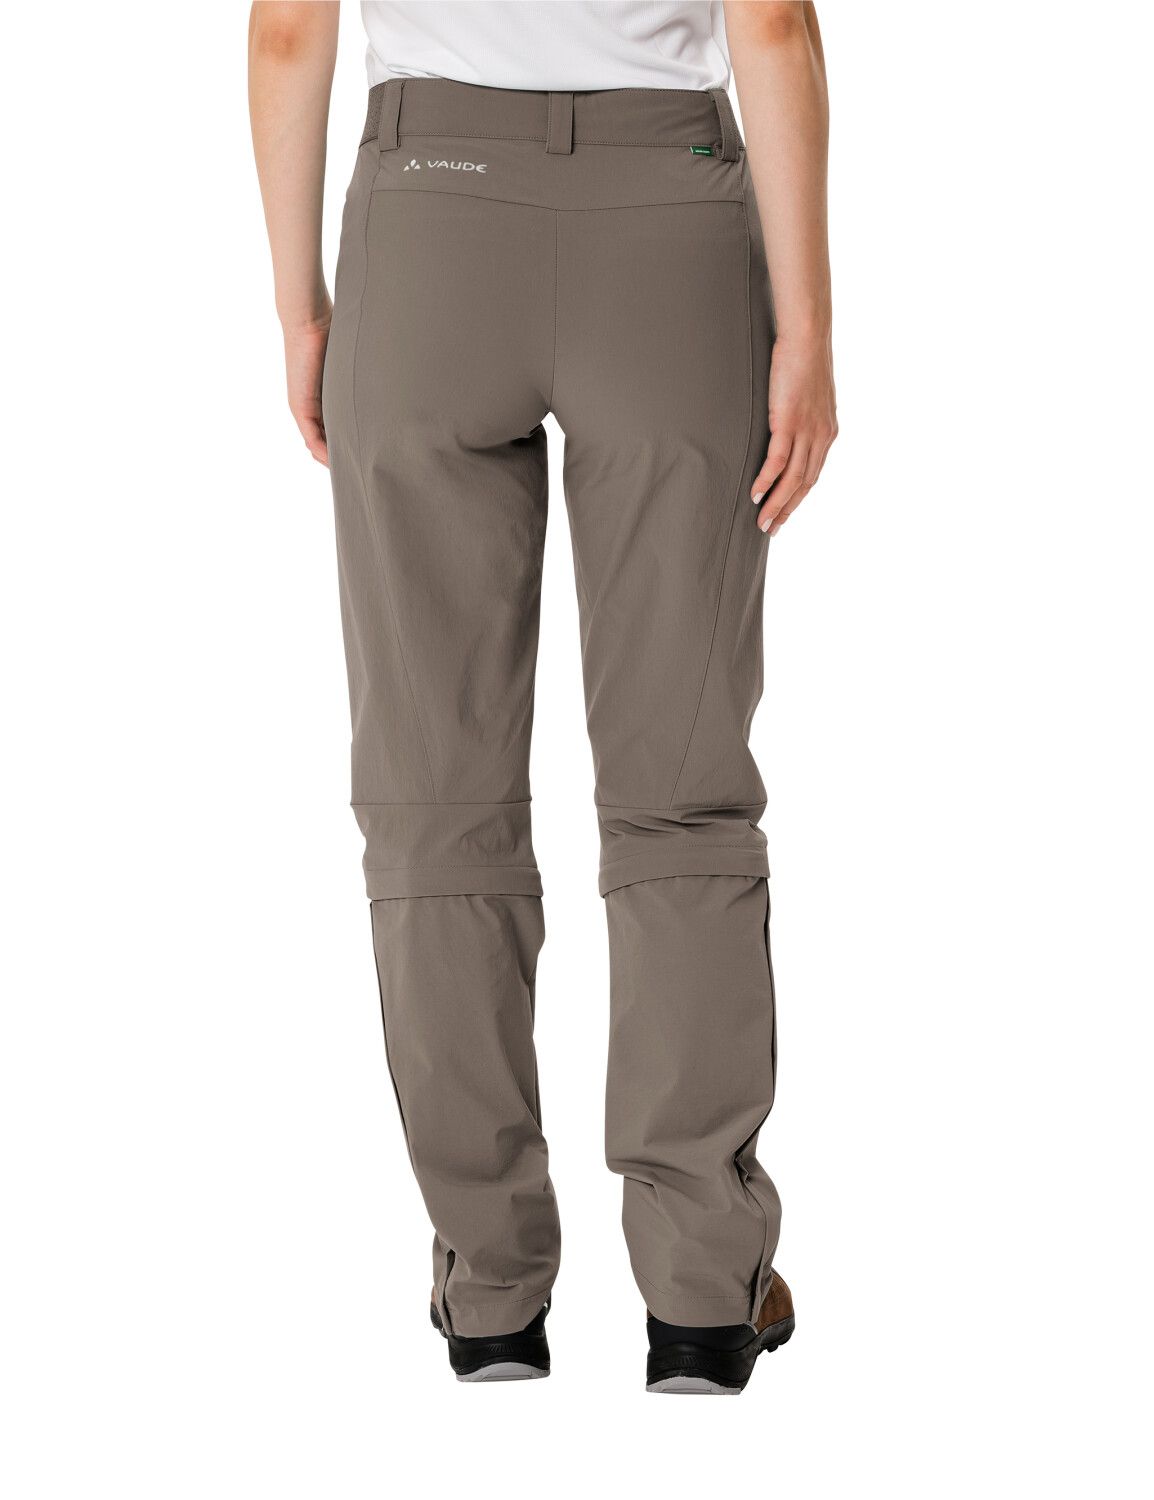 VAUDE Women's Farley Stretch Capri T-Zip Pants III (Bild 1)